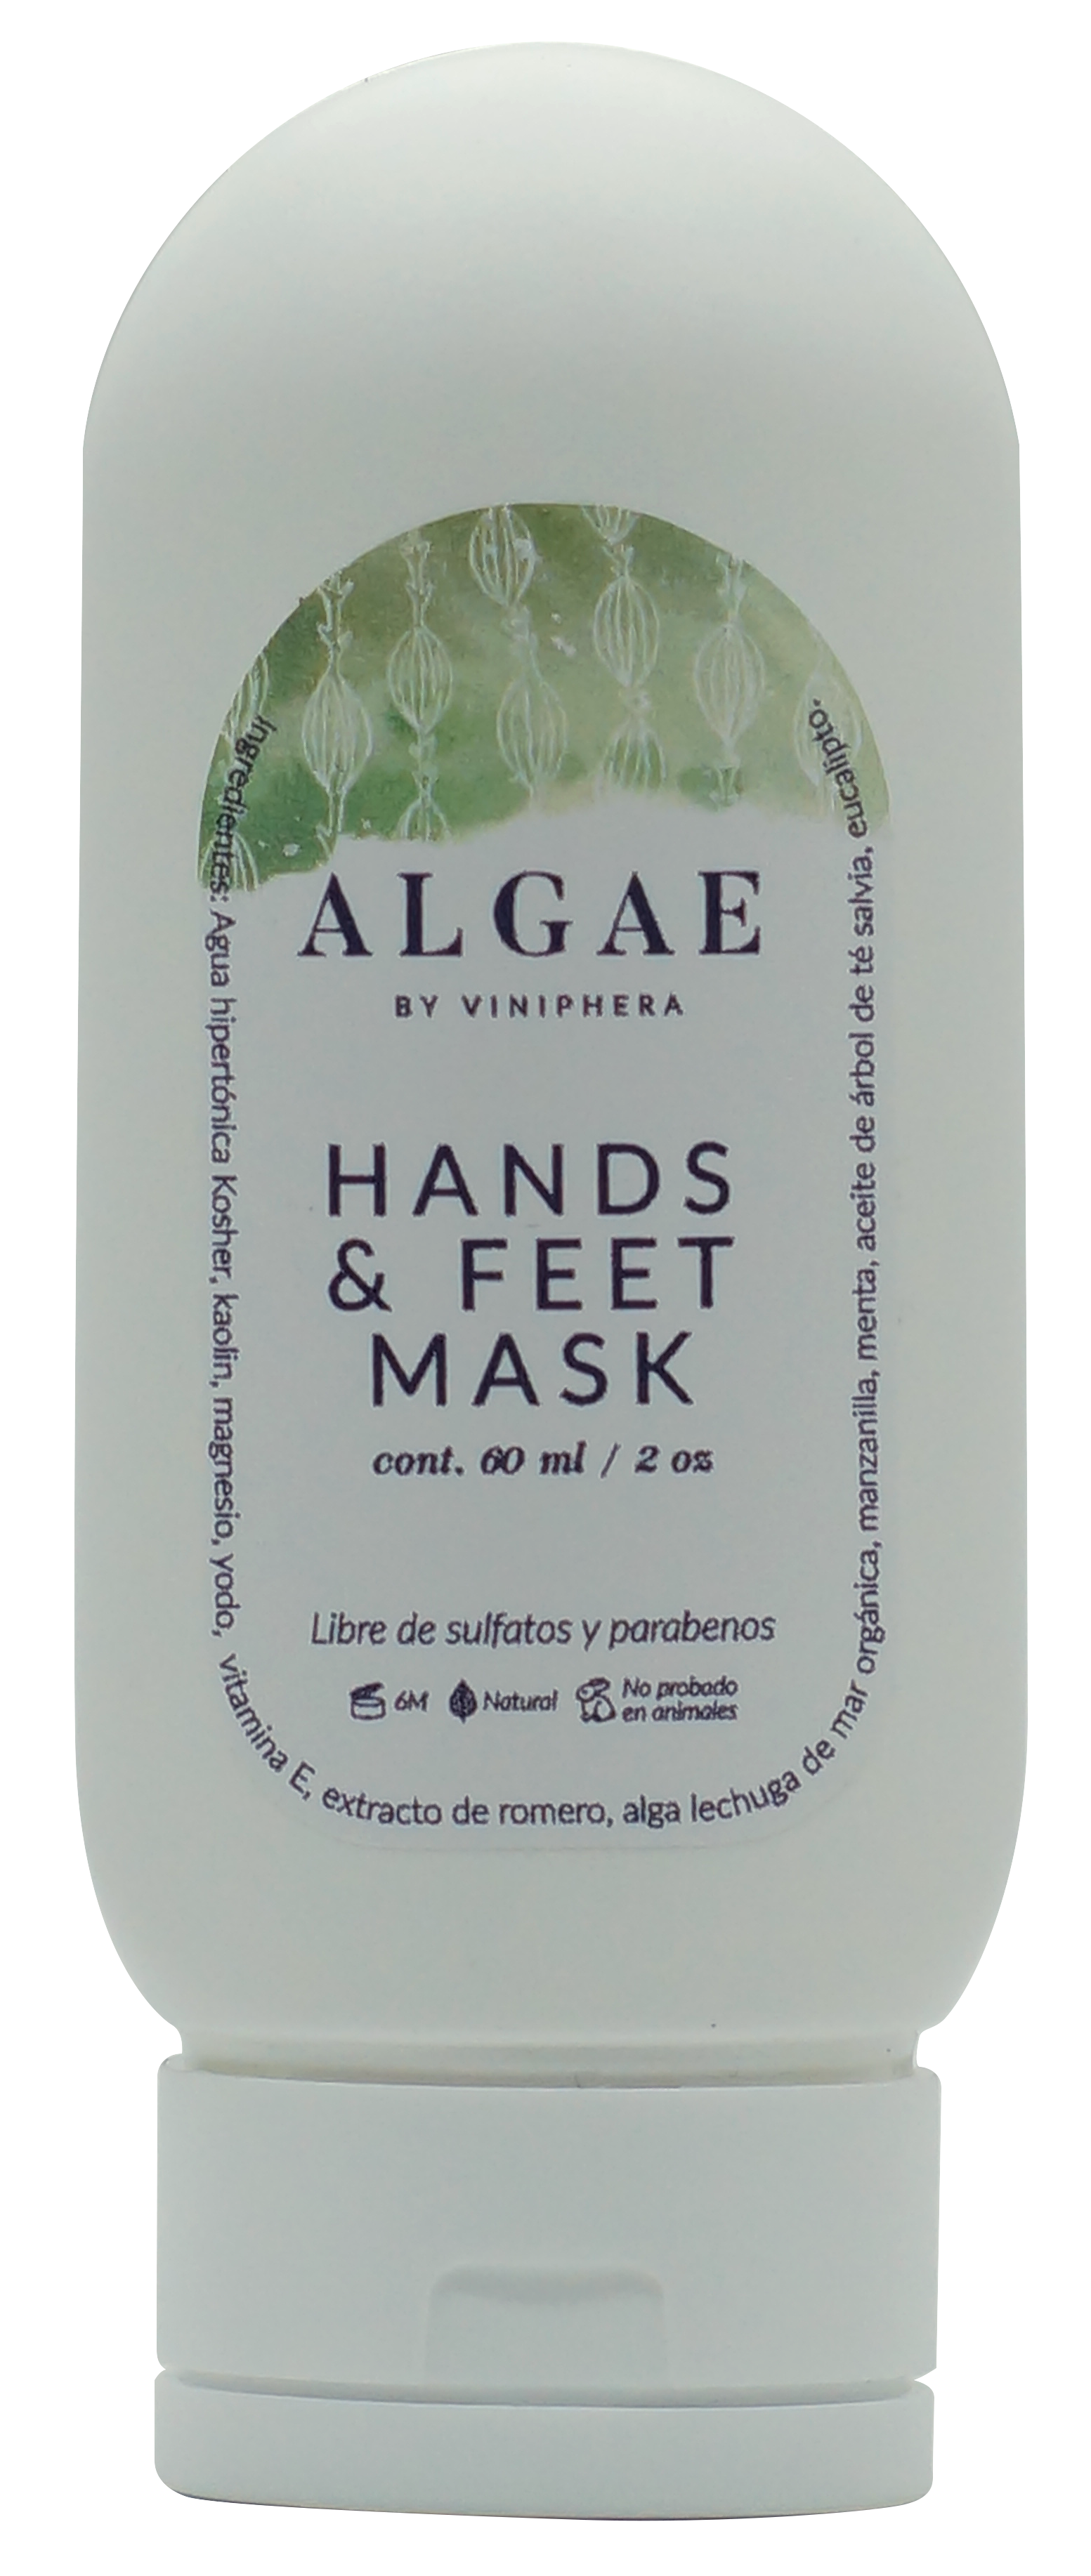 Hand & feet mask Algae 60ml / 2oz